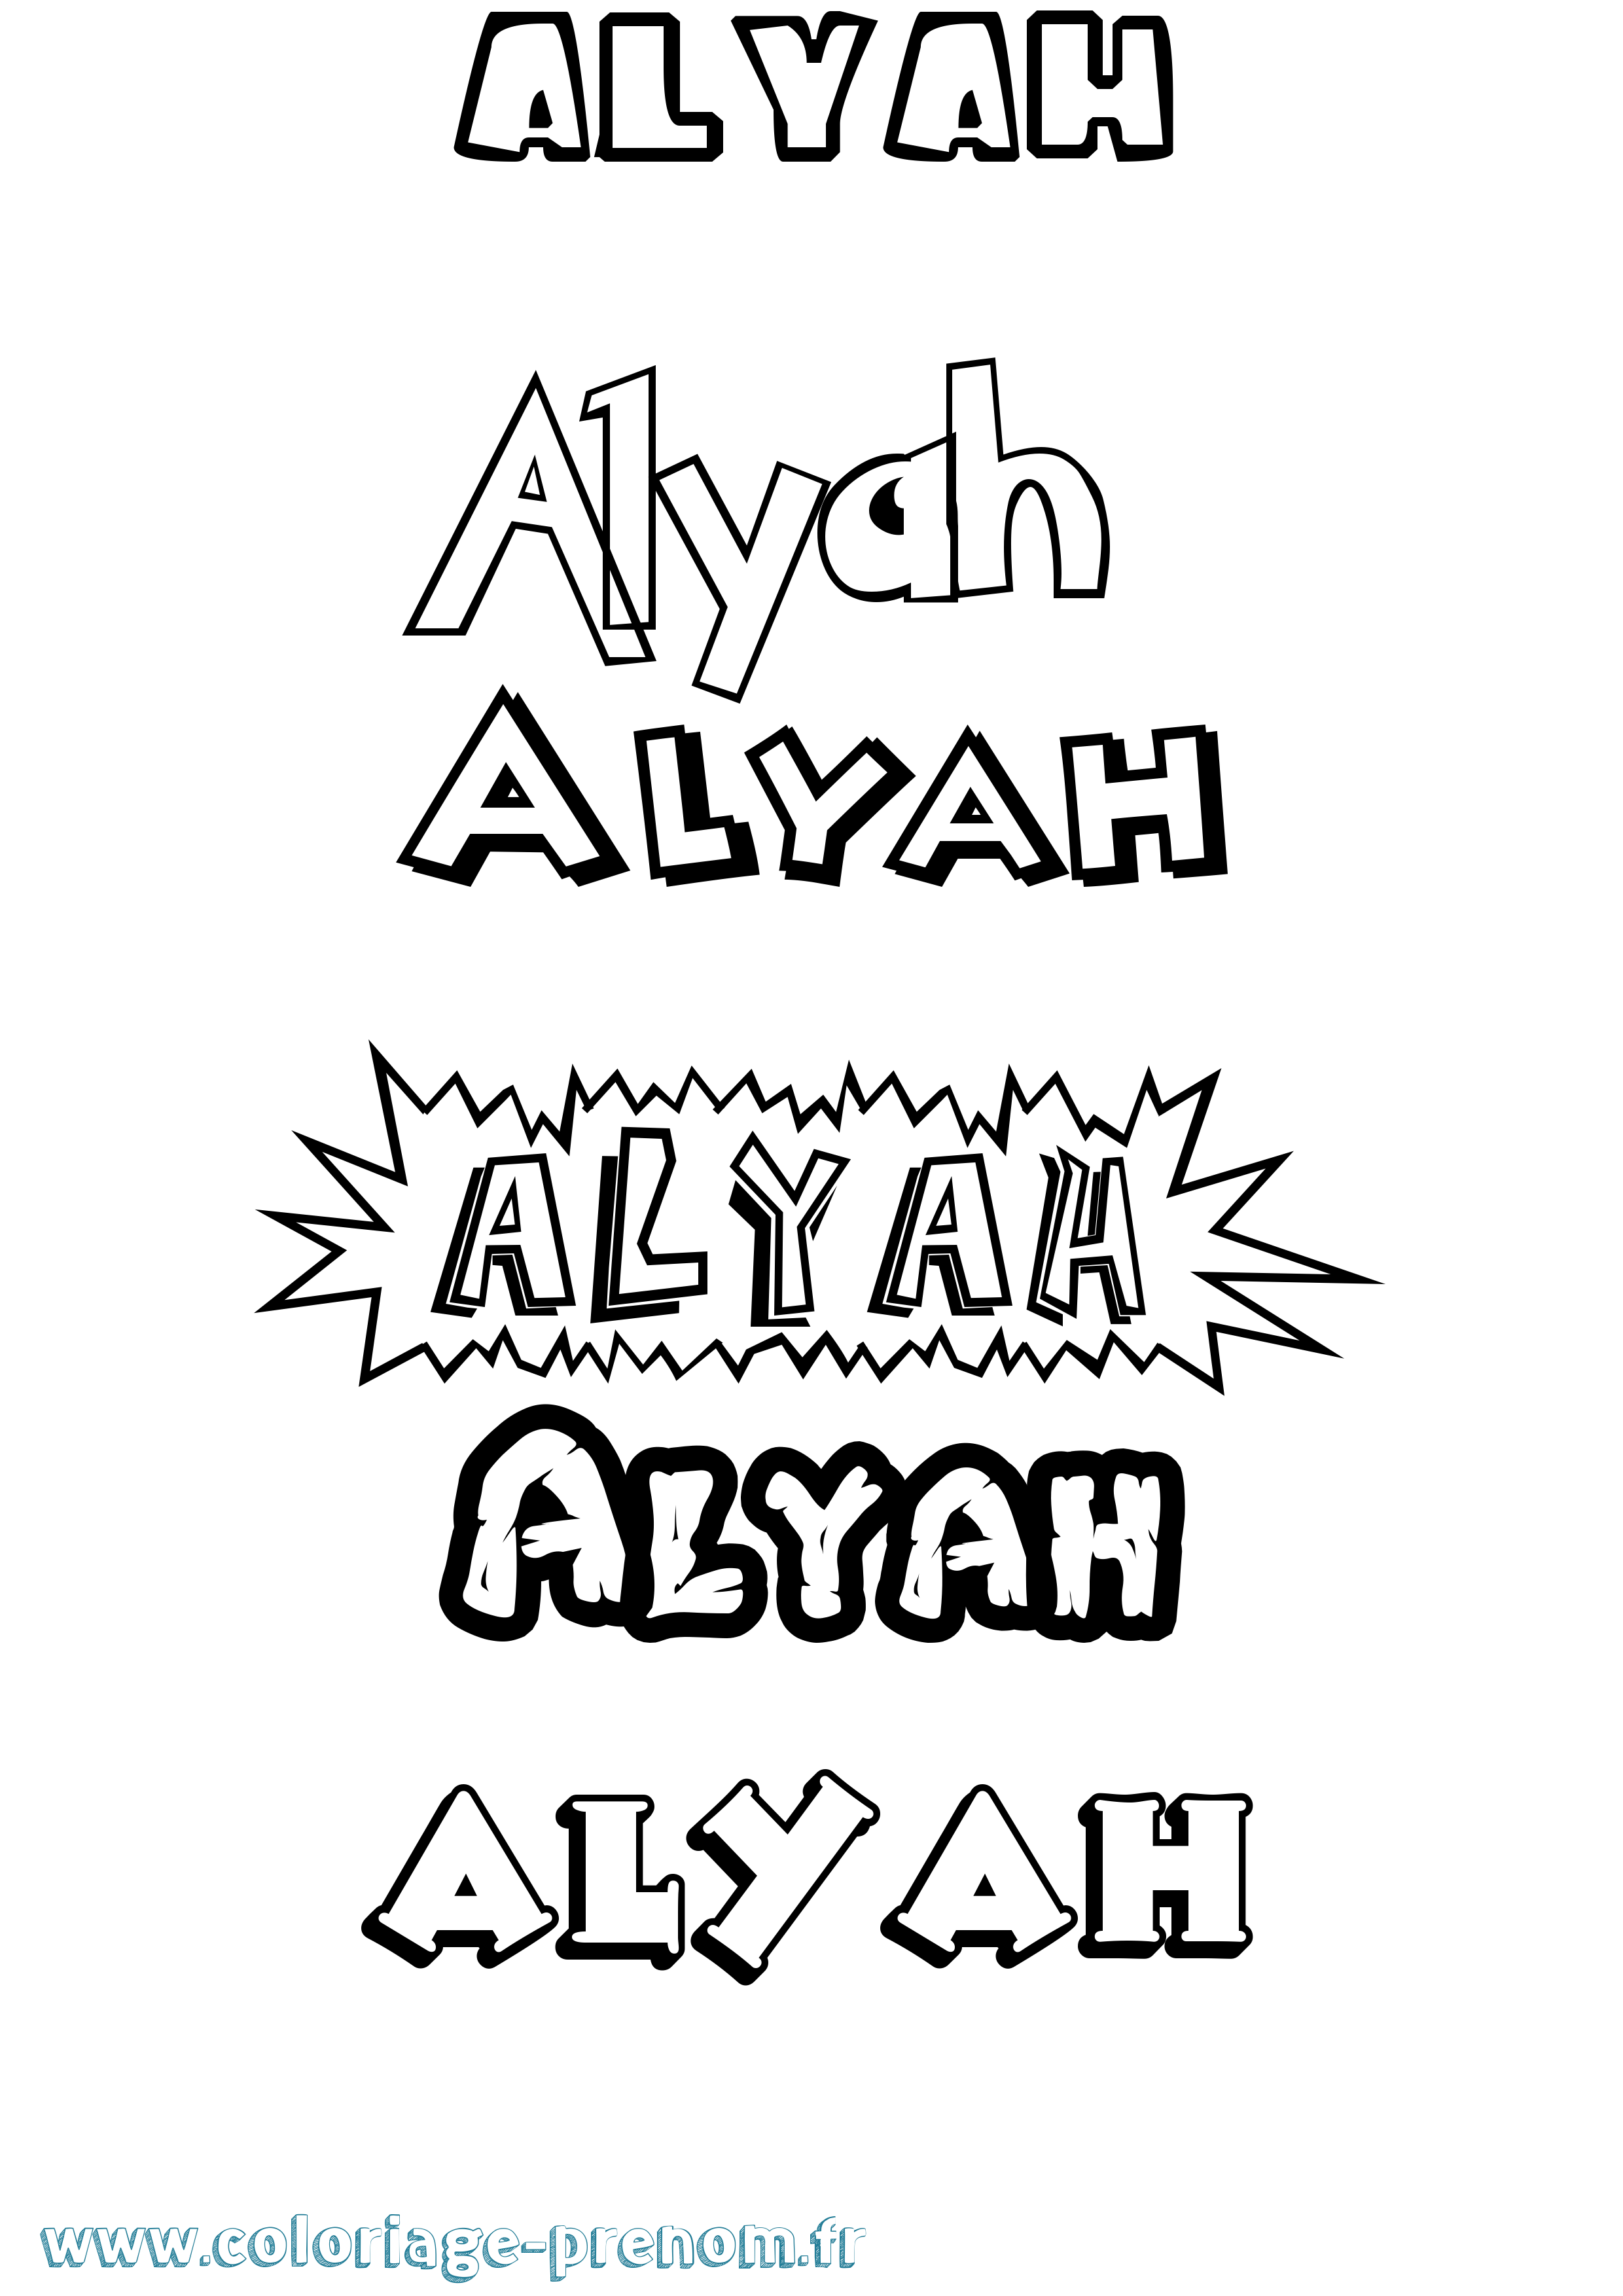 Coloriage prénom Alyah Dessin Animé